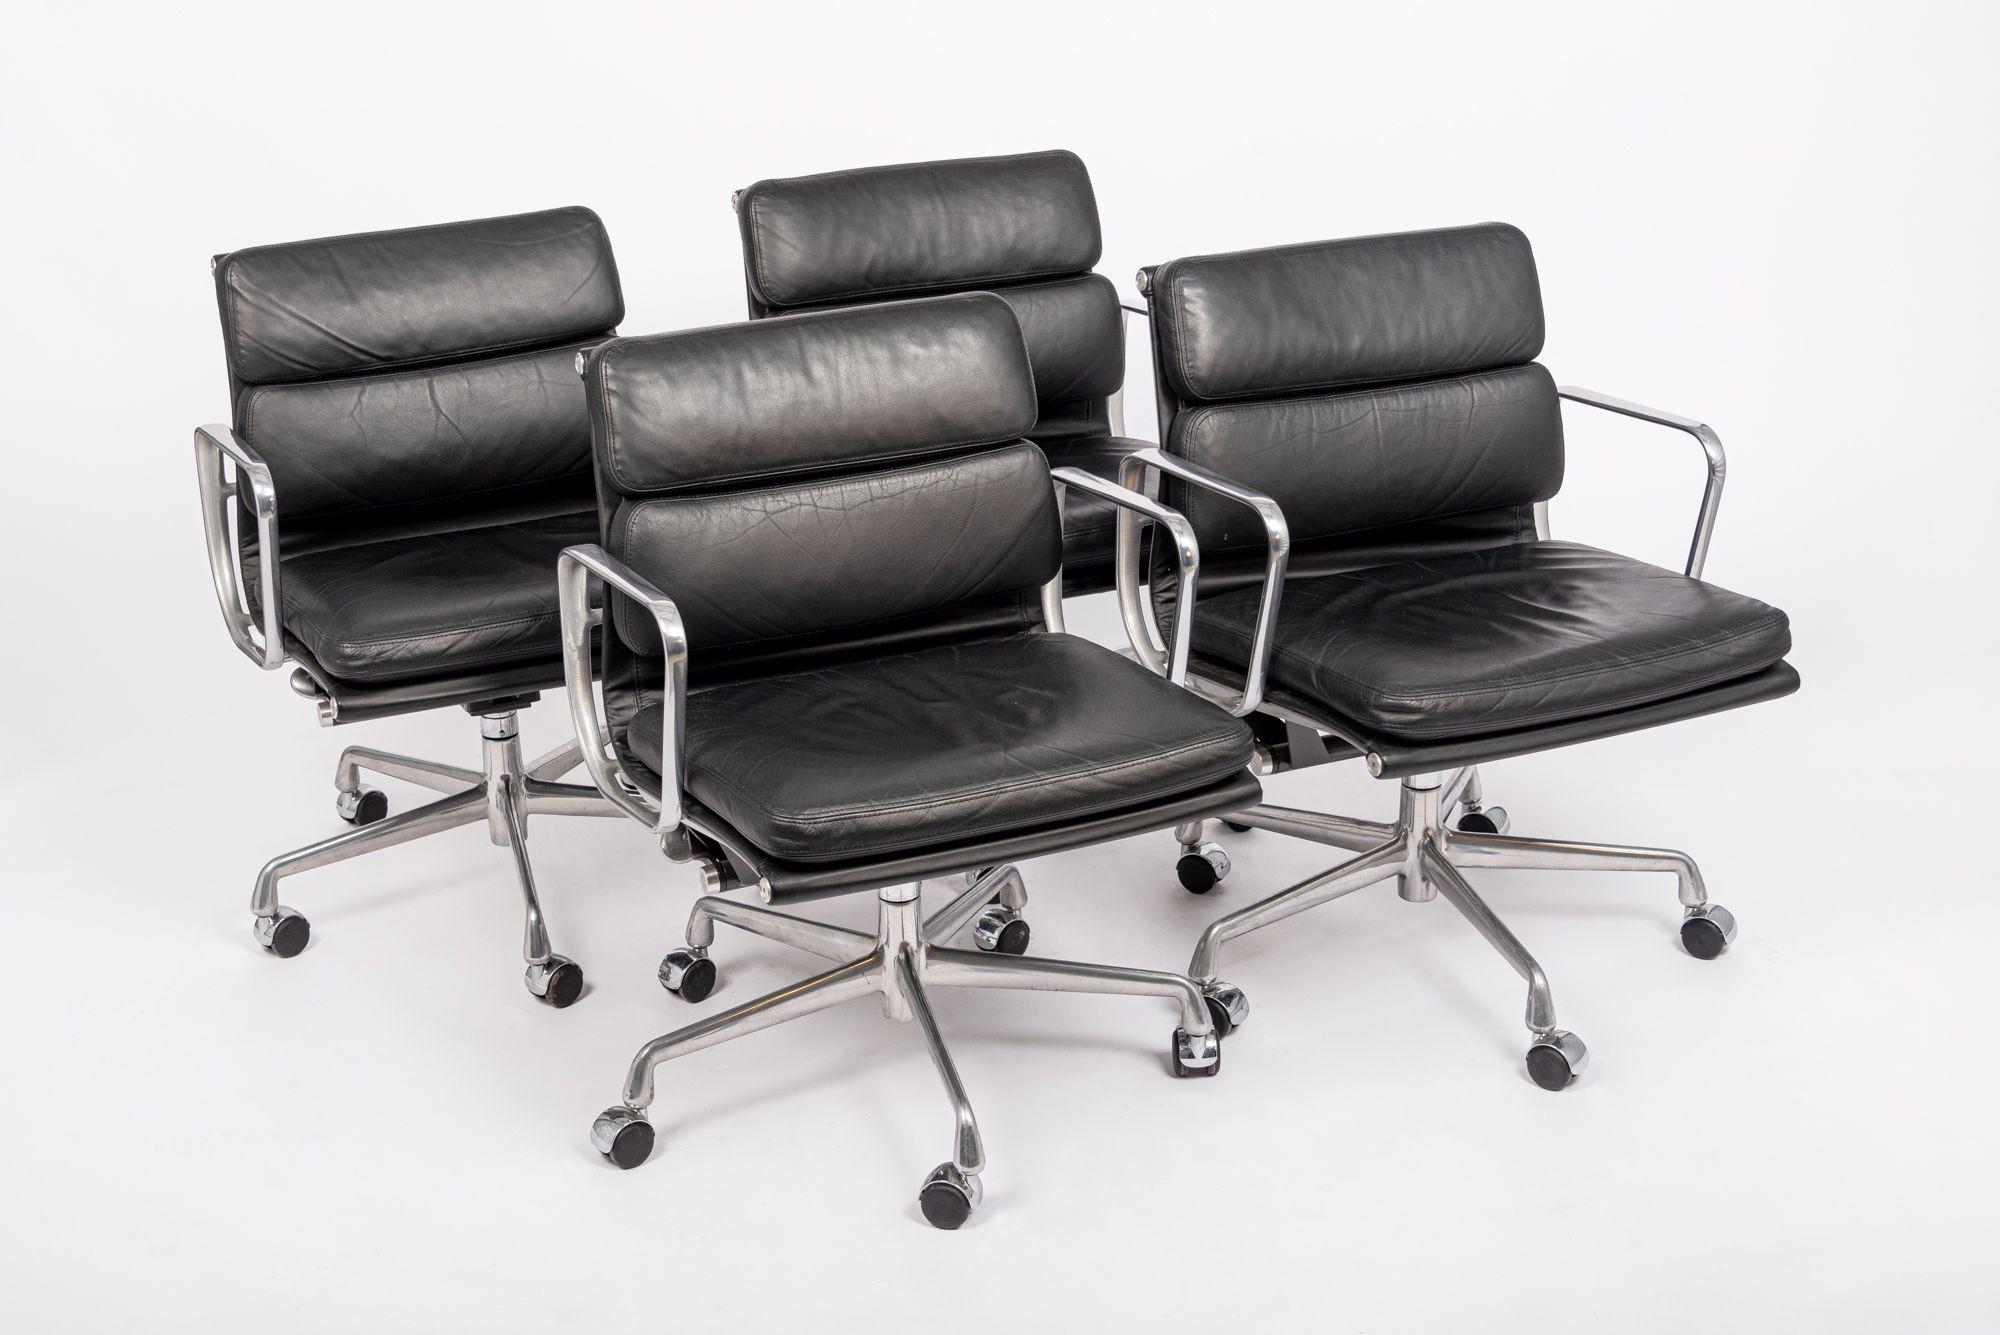 Ces authentiques chaises de bureau en cuir noir Eames for Herman Miller Soft Pad Management Height de l'Aluminum Group Collection ont été fabriquées en 2001. Cette chaise de bureau classique et moderne du milieu du siècle a été introduite pour la